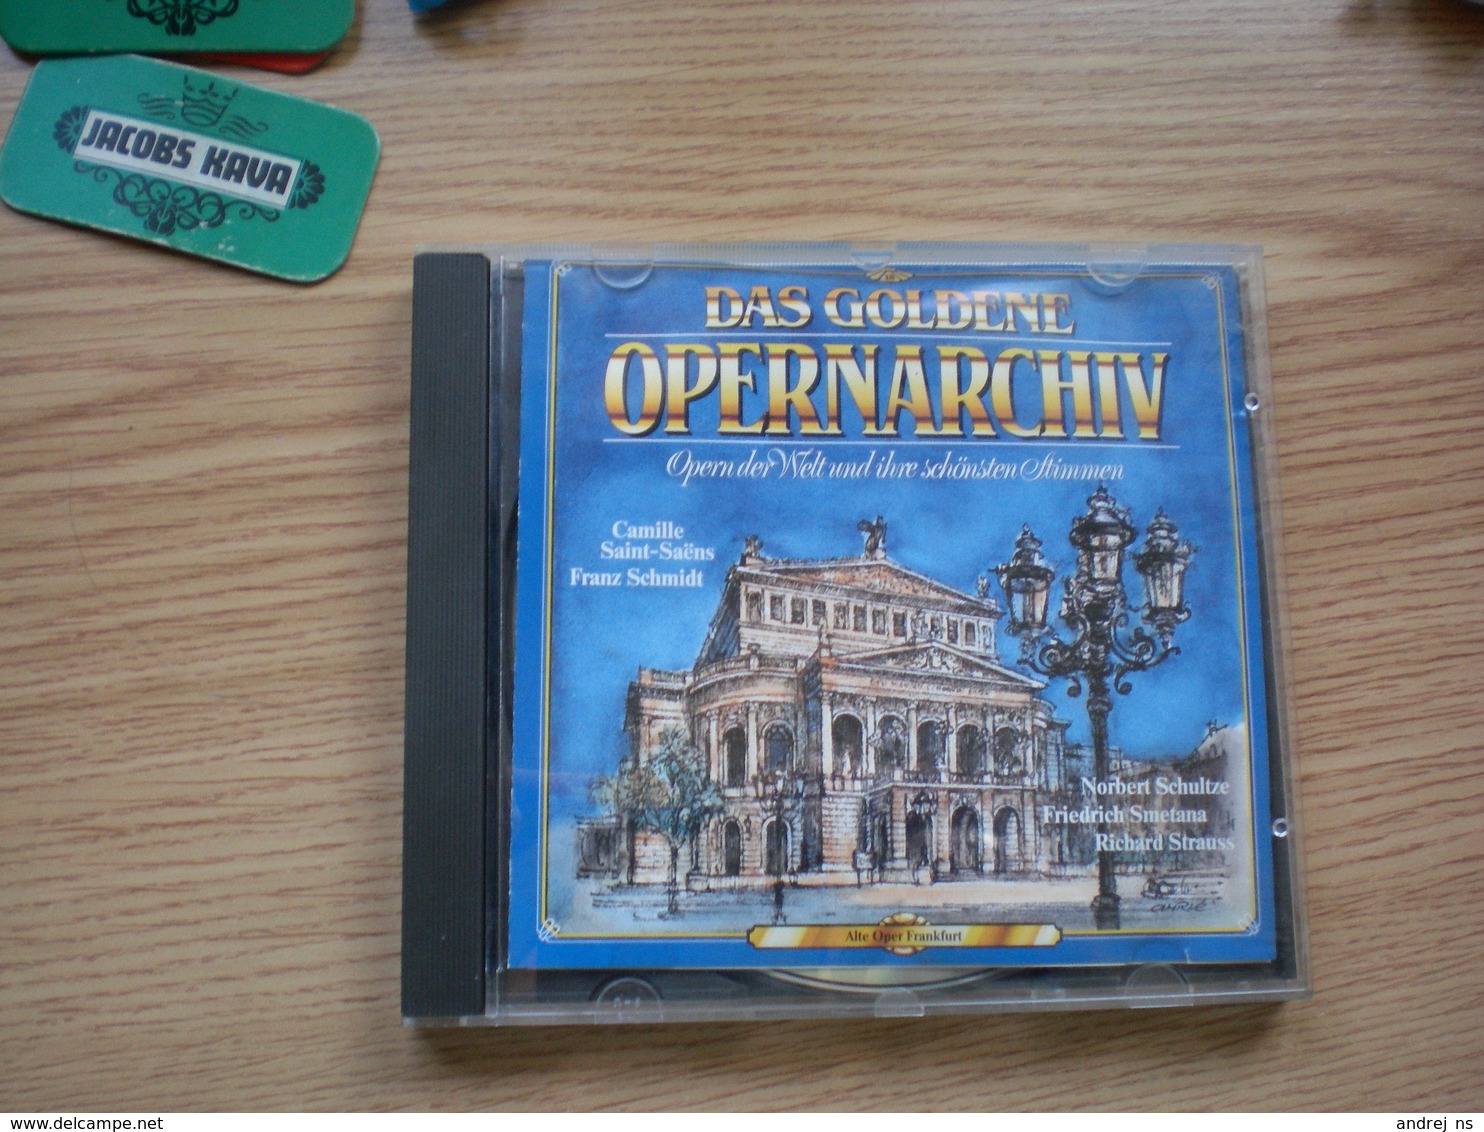 Das Goldene Opernarchiv - Oper & Operette